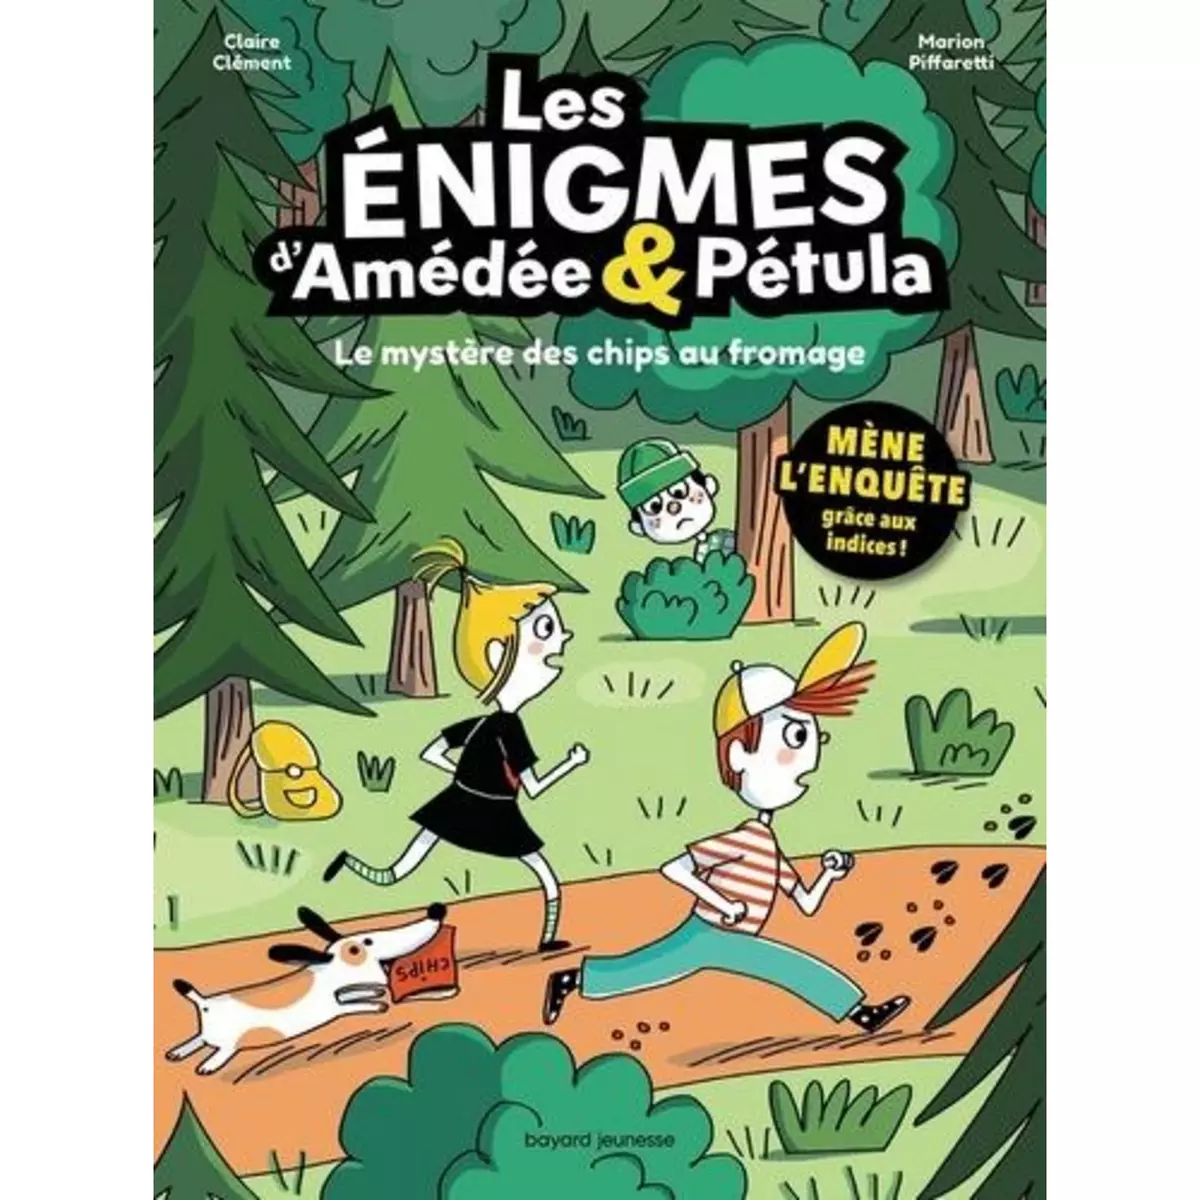  LES ENIGMES D'AMEDEE & PETULA. LE MYSTERE DES CHIPS AU FROMAGE, Clément Claire